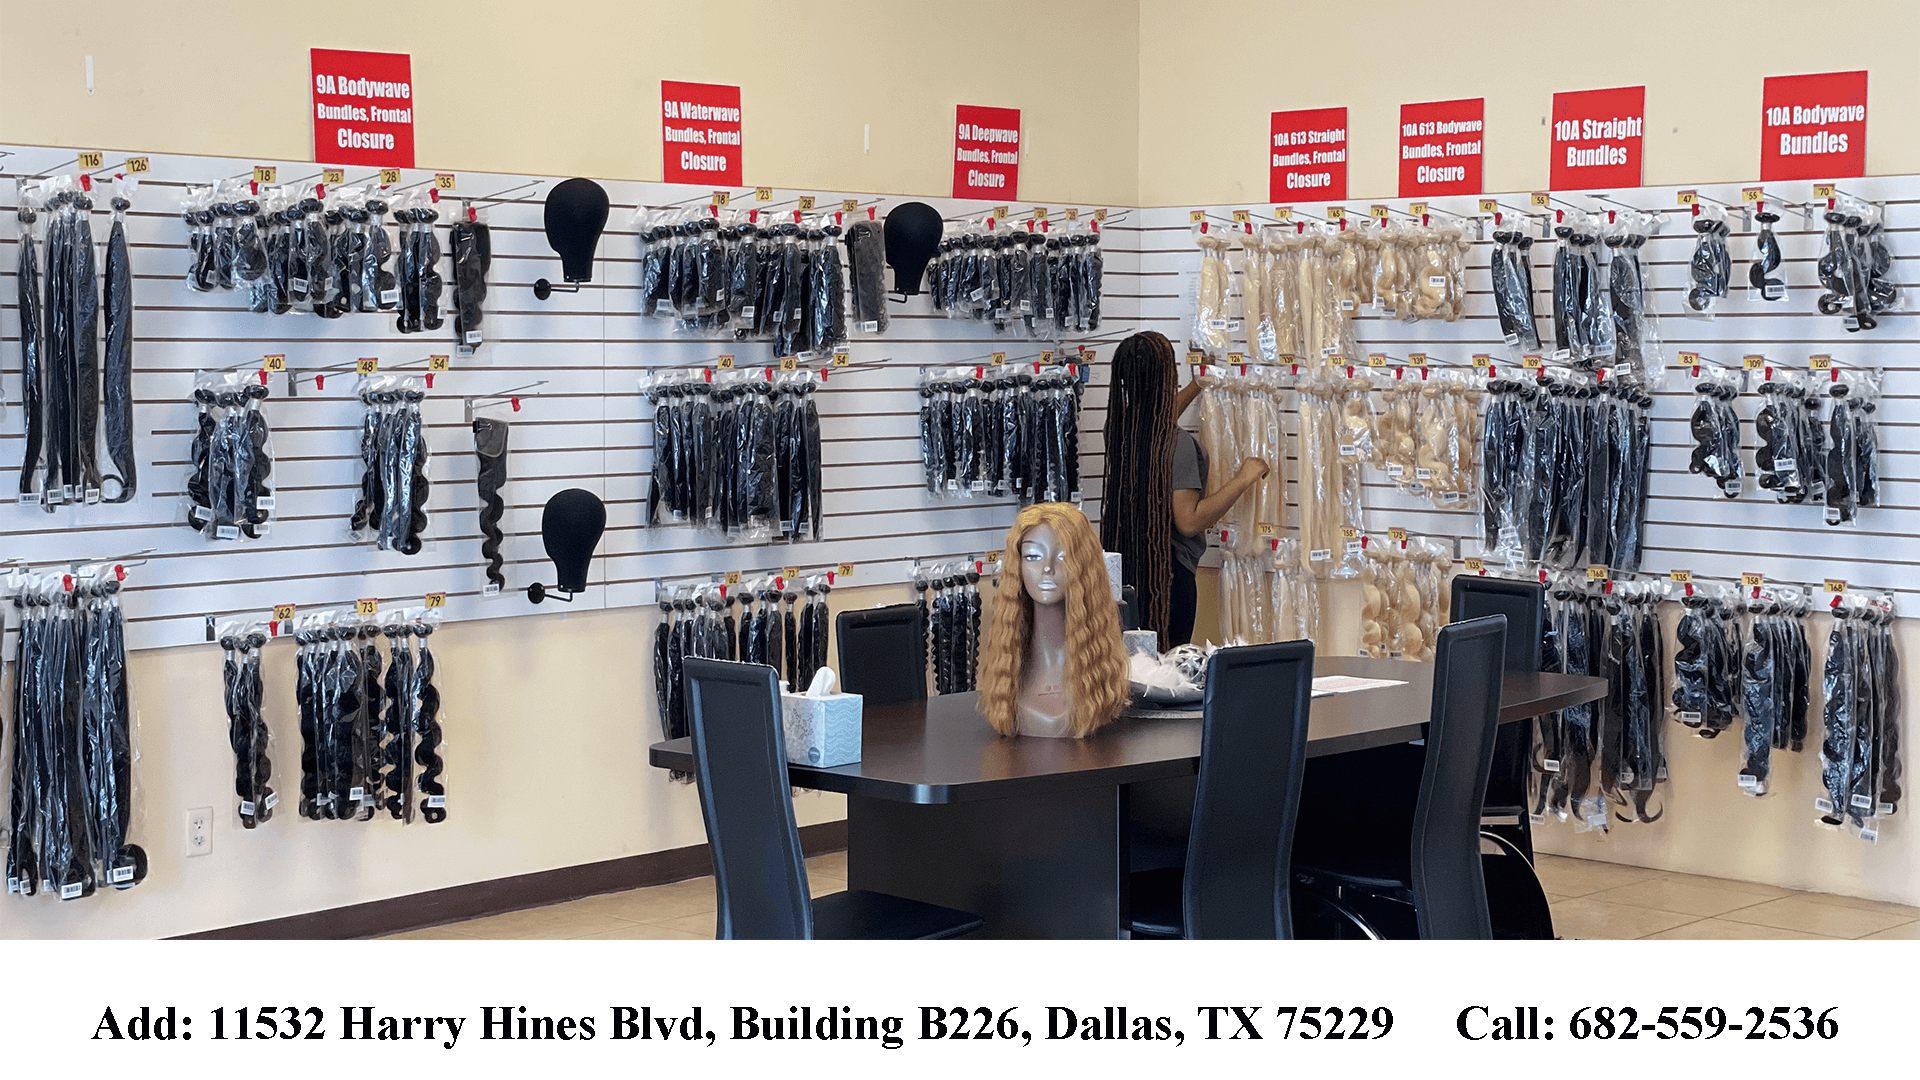 BUW Human Hair Store - Dallas – BUWUS